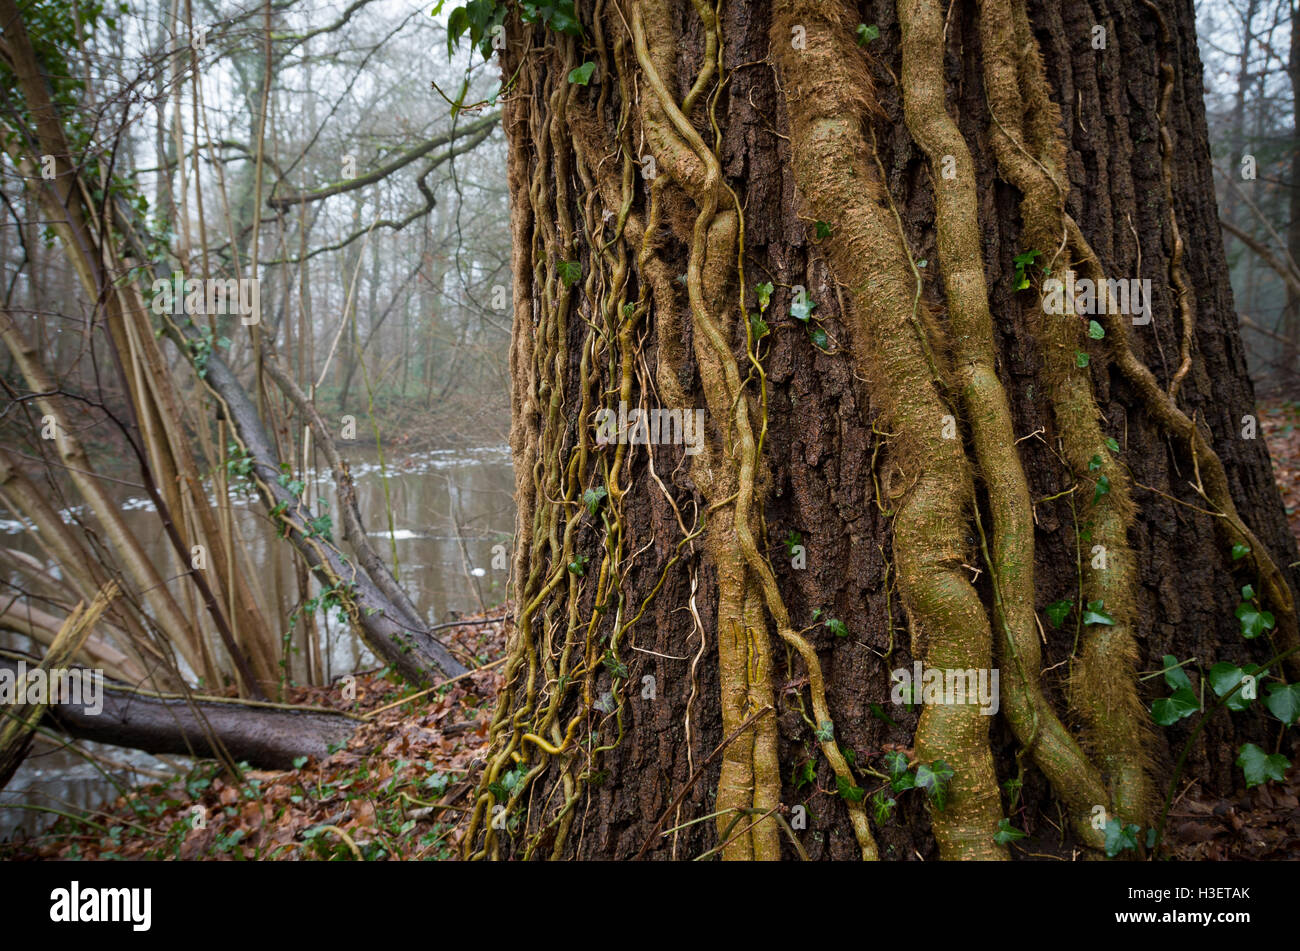 Baum mit Efeu Lianen in einem herbstlichen Wald bedeckt Stockfoto